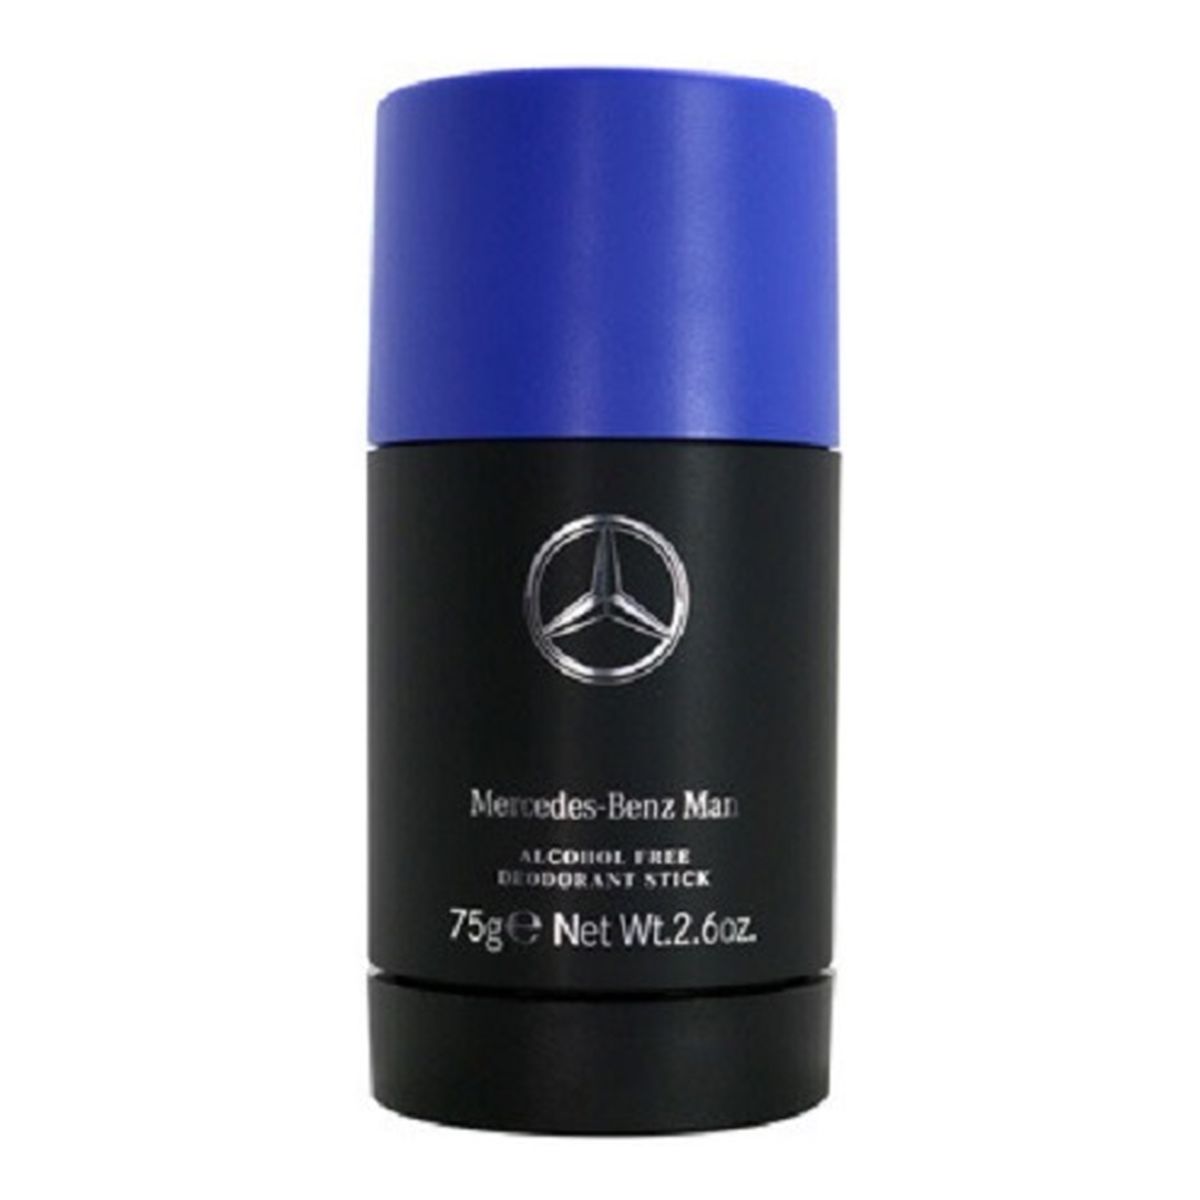 Mercedes-Benz Man Dezodorant sztyft 75ml